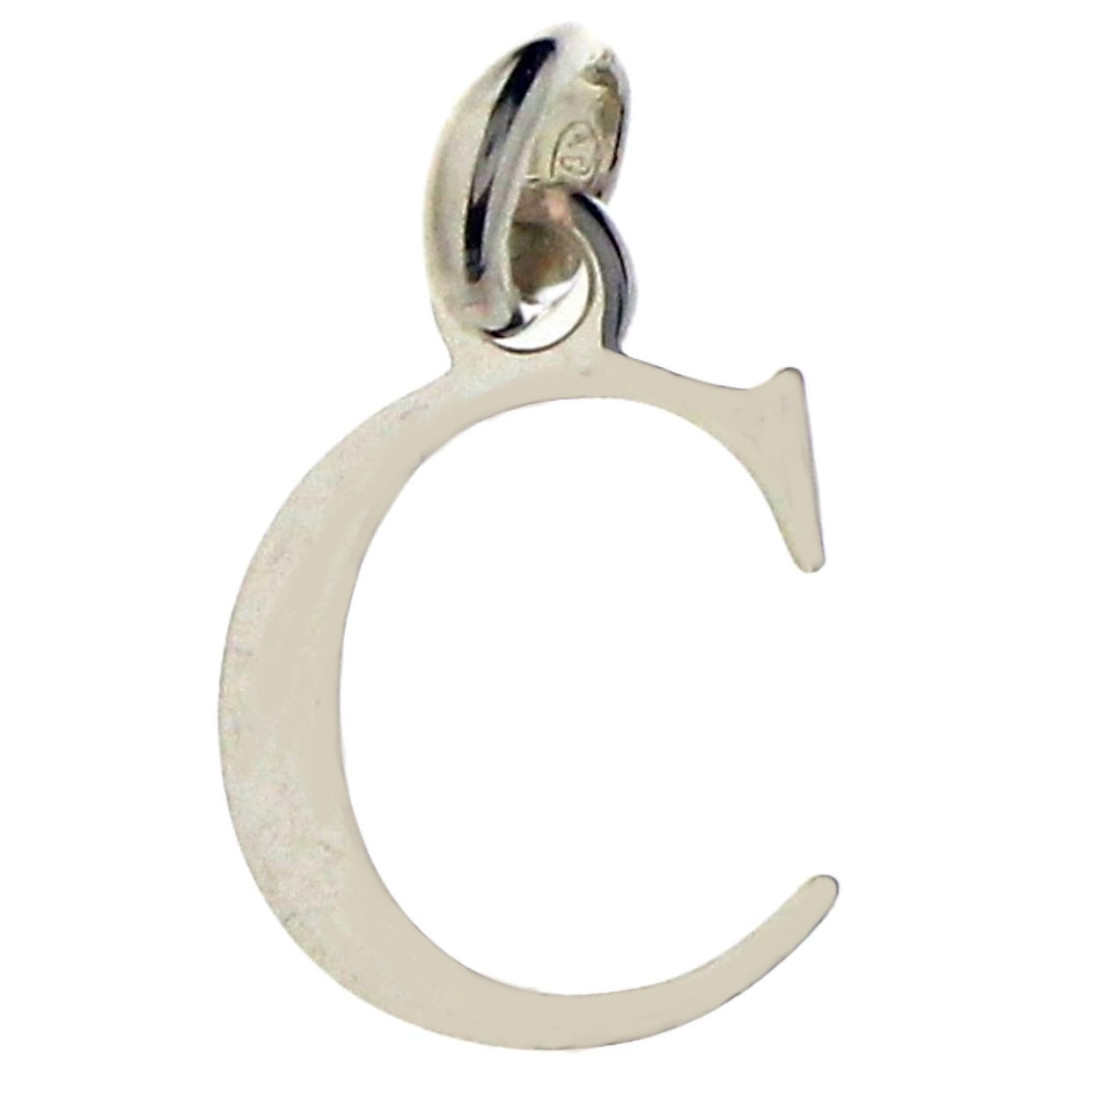 Pendentif Initiale simple lettre C en argent + chaine